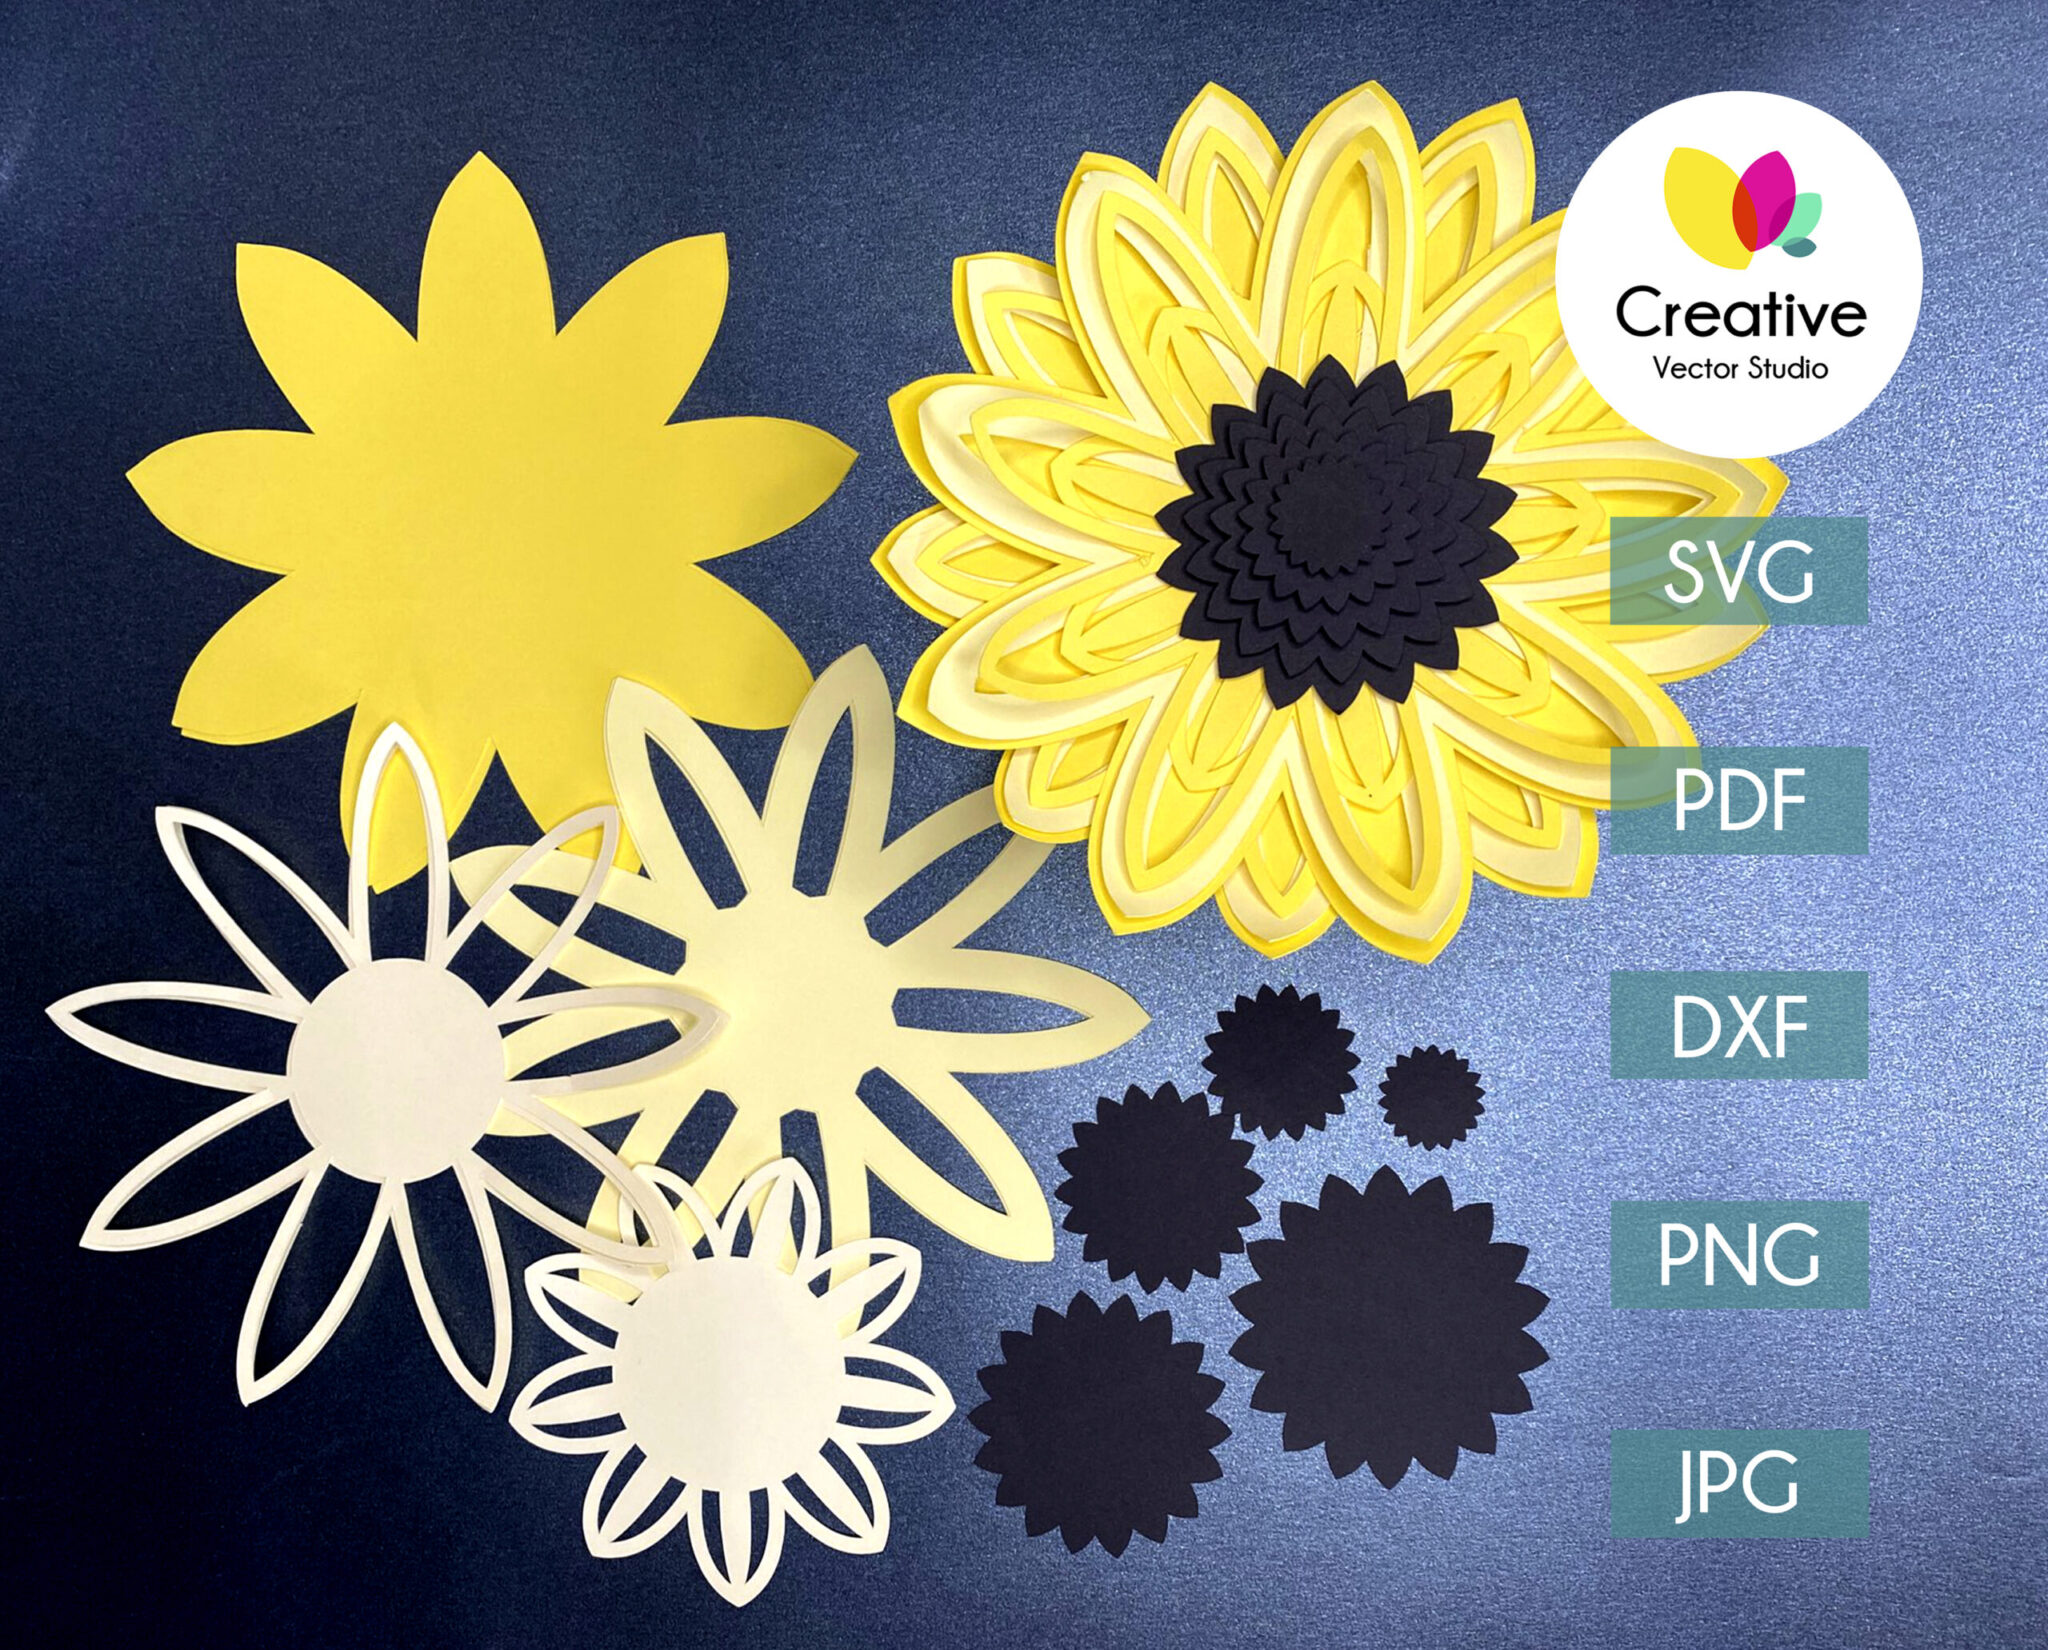 Sunflower SVG, DIY Paper Sunflower Craft Template, 3D Paper Flowers svg